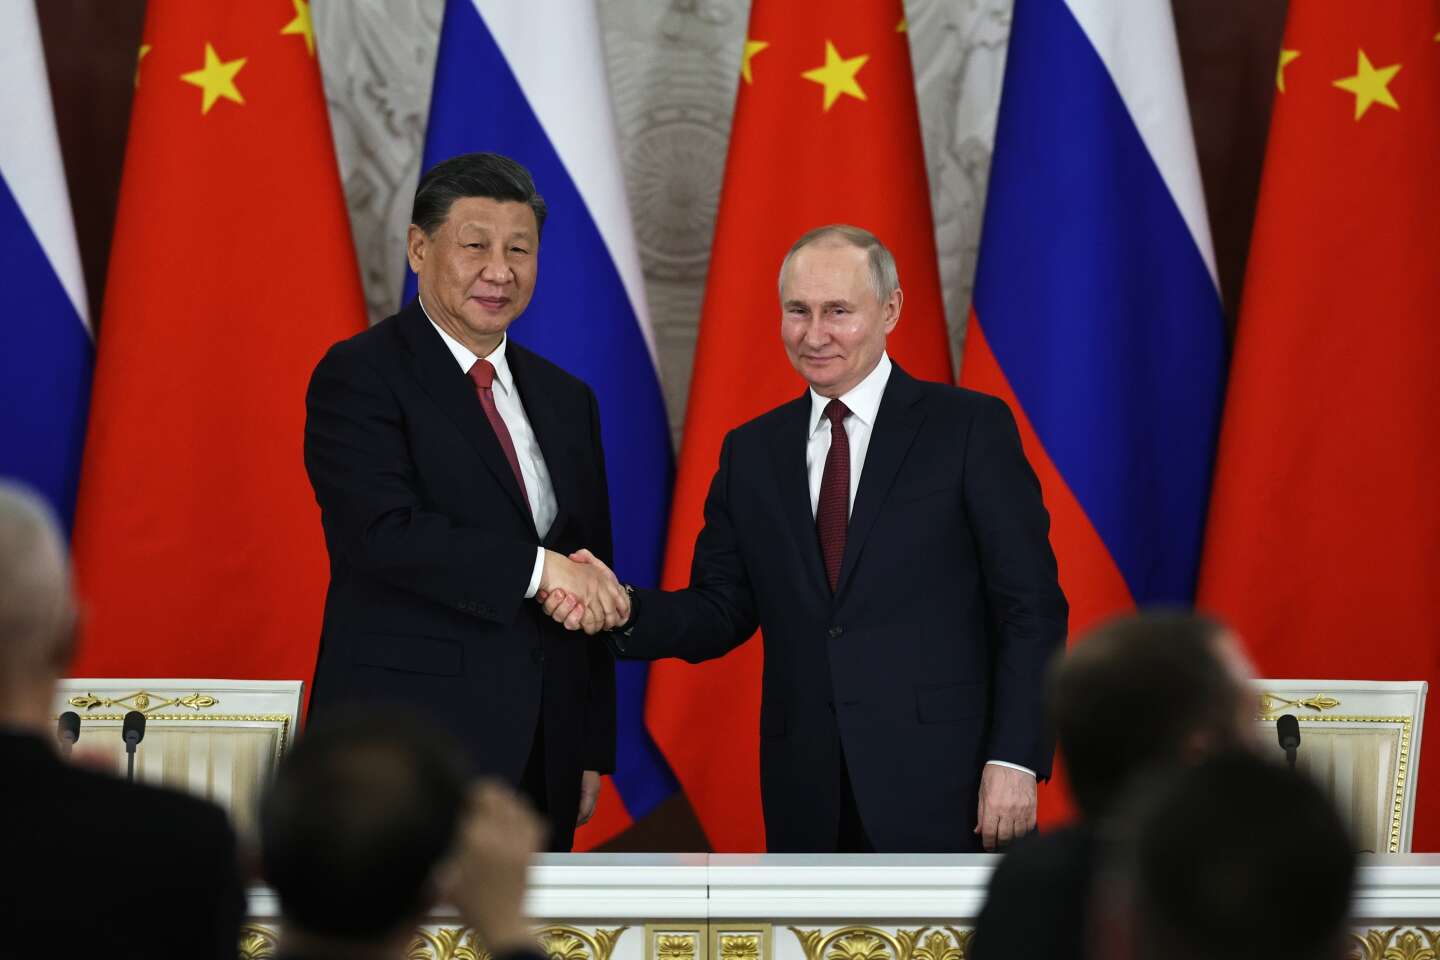 « Le discours très anti-occidental de Xi Jinping, partagé par Vladimir Poutine, vient compliquer le dilemme des Européens par rapport à la Chine »